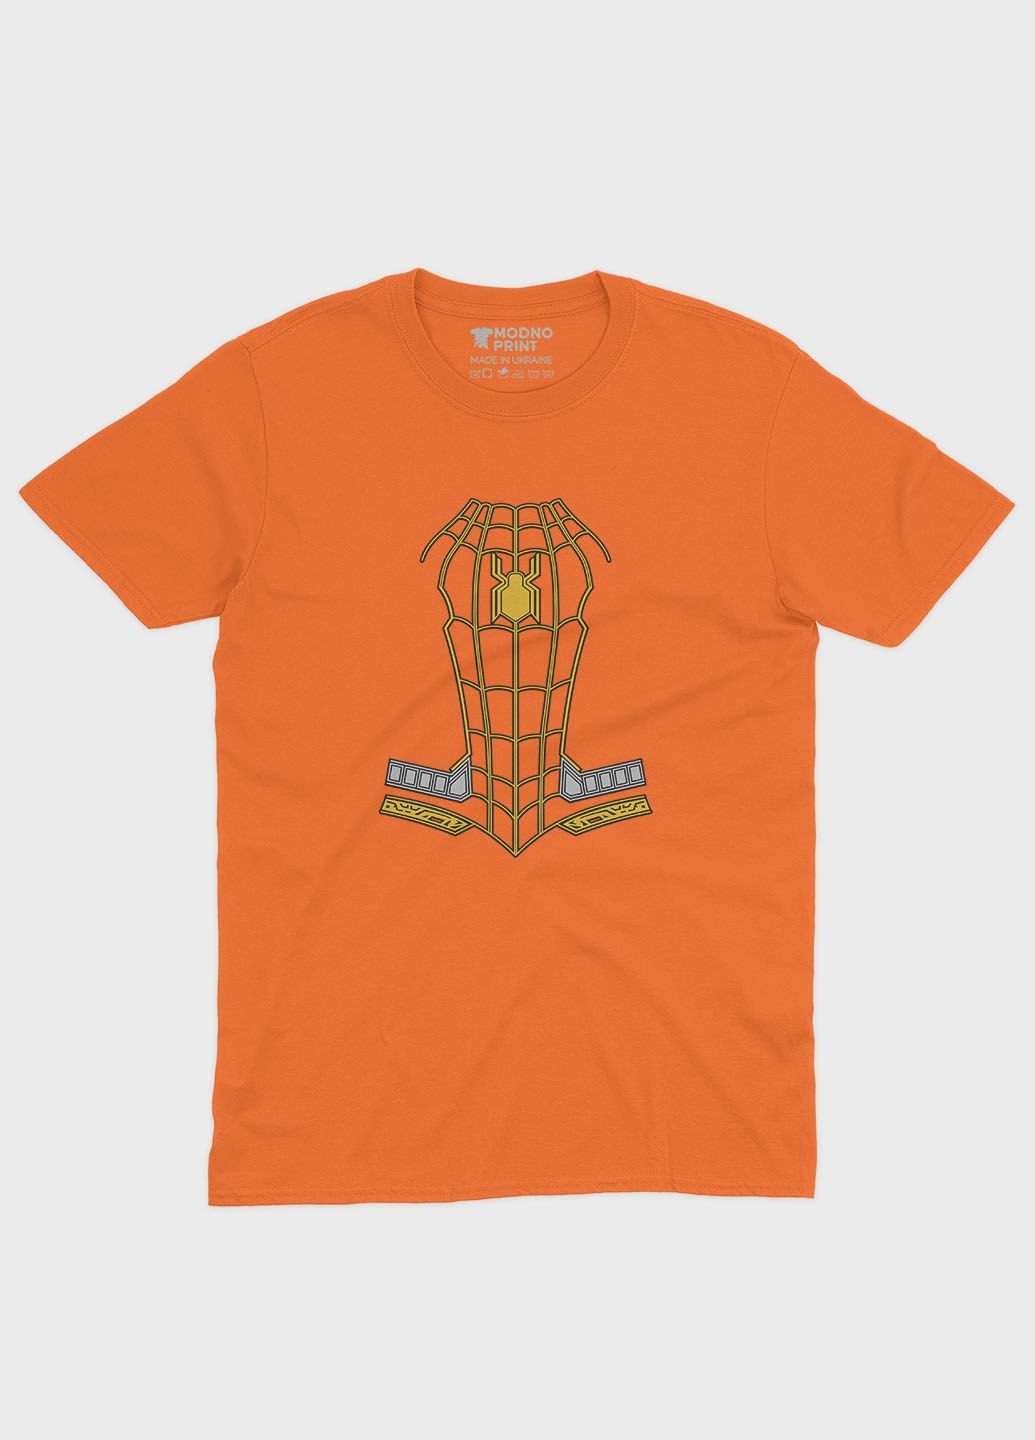 Оранжевая демисезонная футболка для мальчика с принтом супергероя - человек-паук (ts001-1-ora-006-014-083-b) Modno